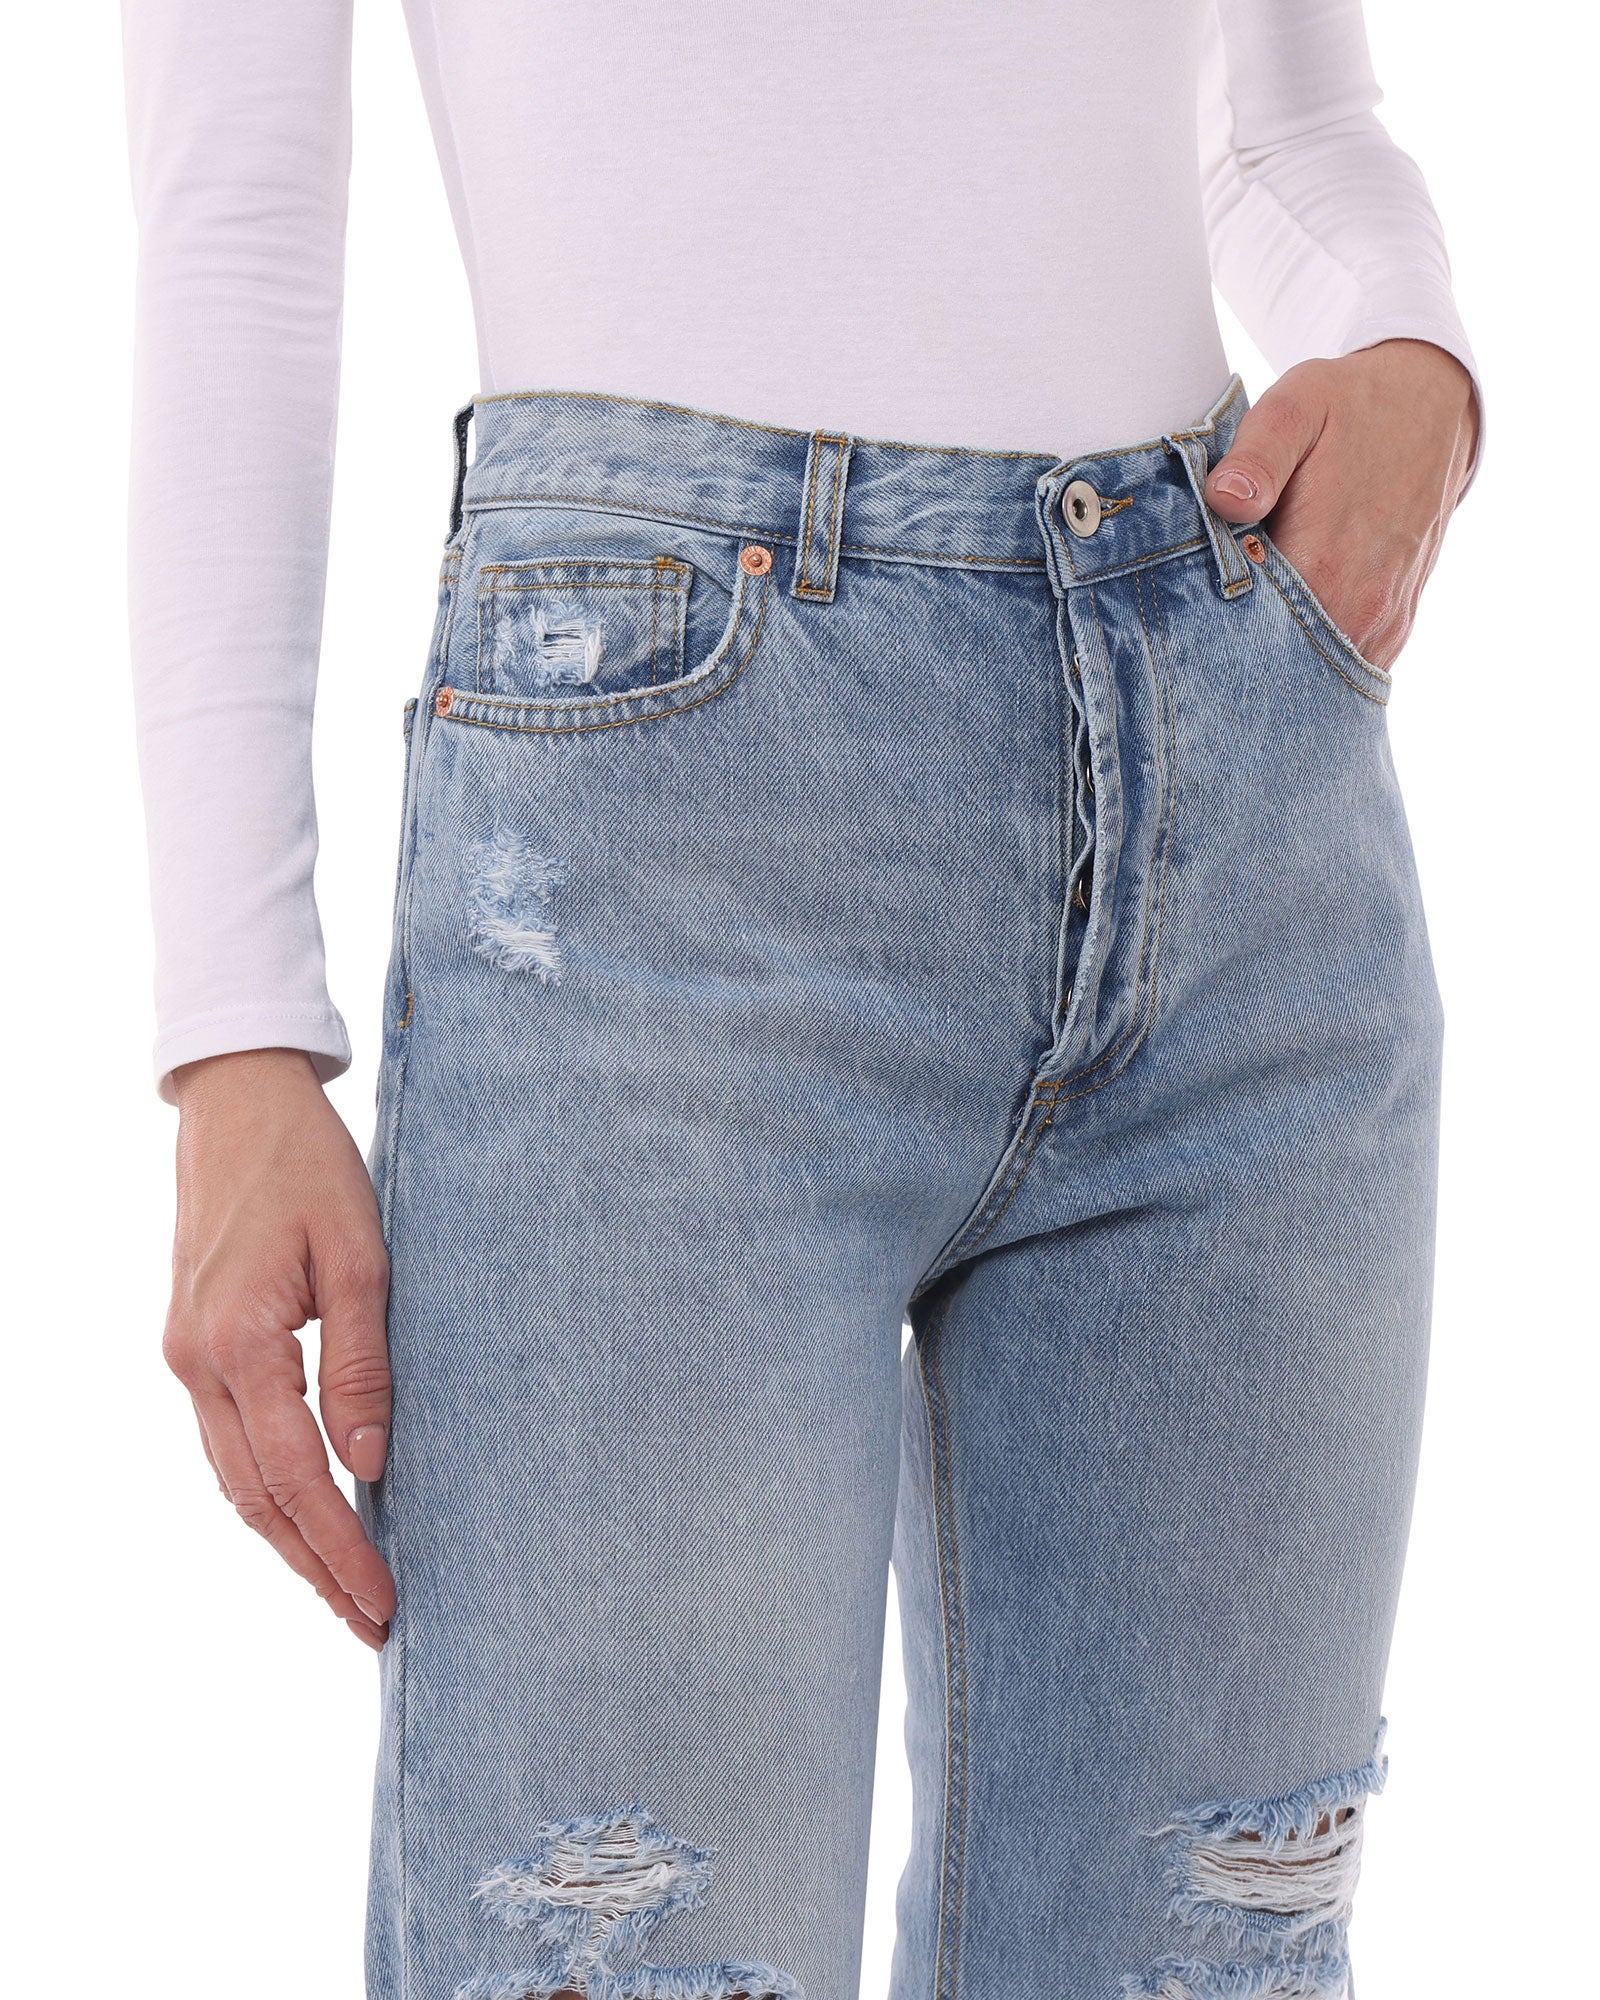 Jeans Donna in Cotone Organico (Taper - Chiaro)